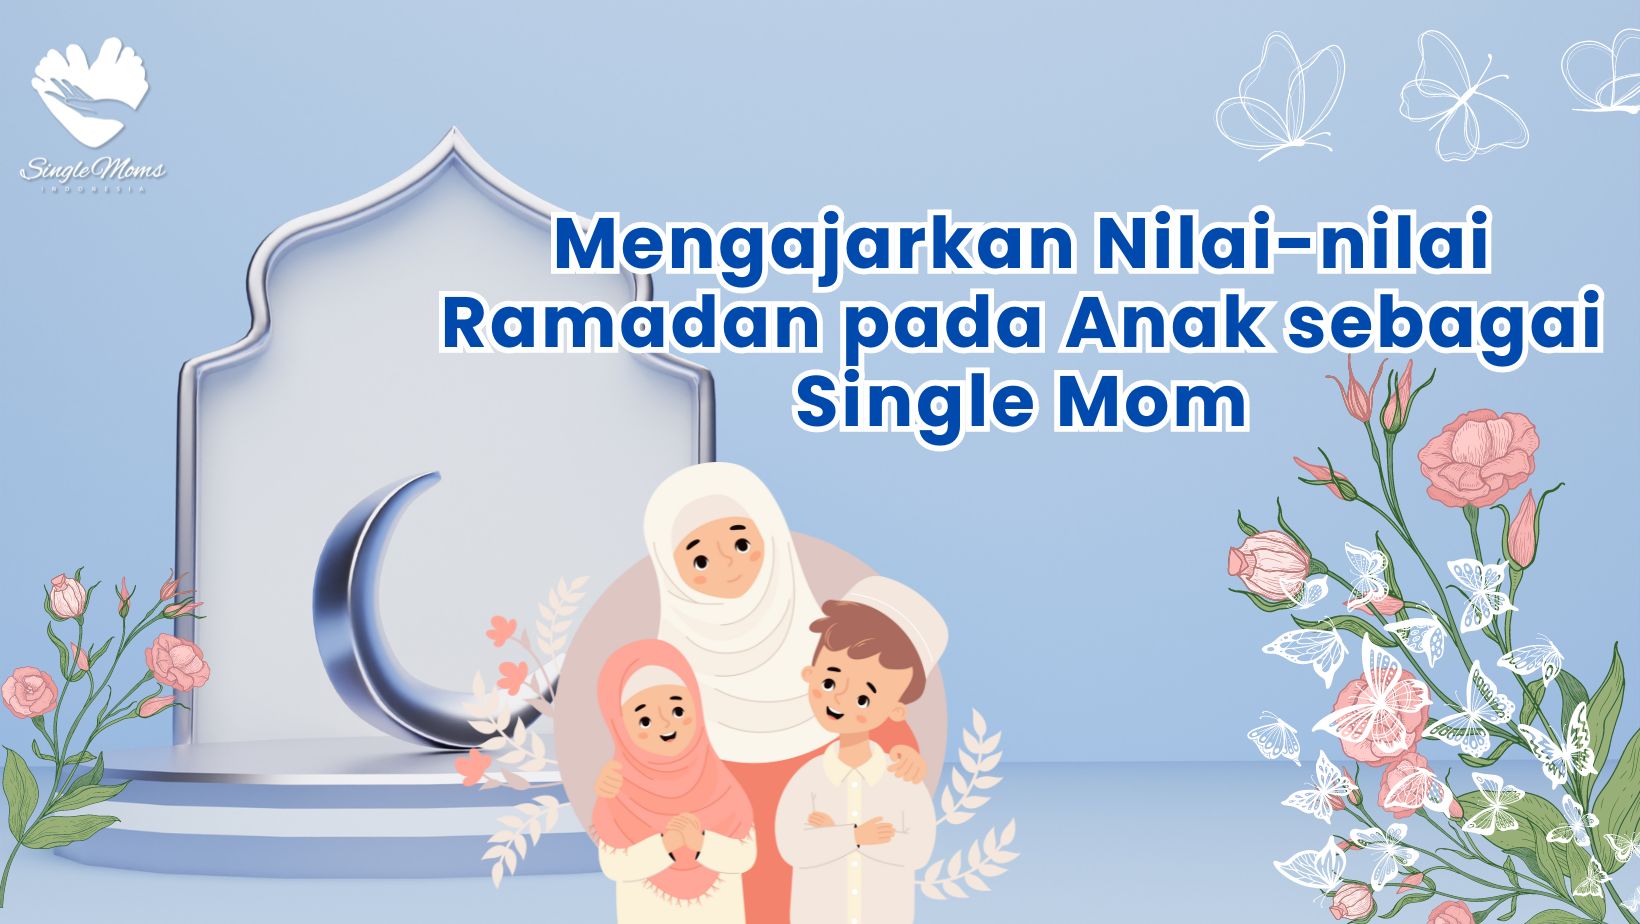 Mengajarkan Nilai-nilai Ramadan pada Anak sebagai Single Mom